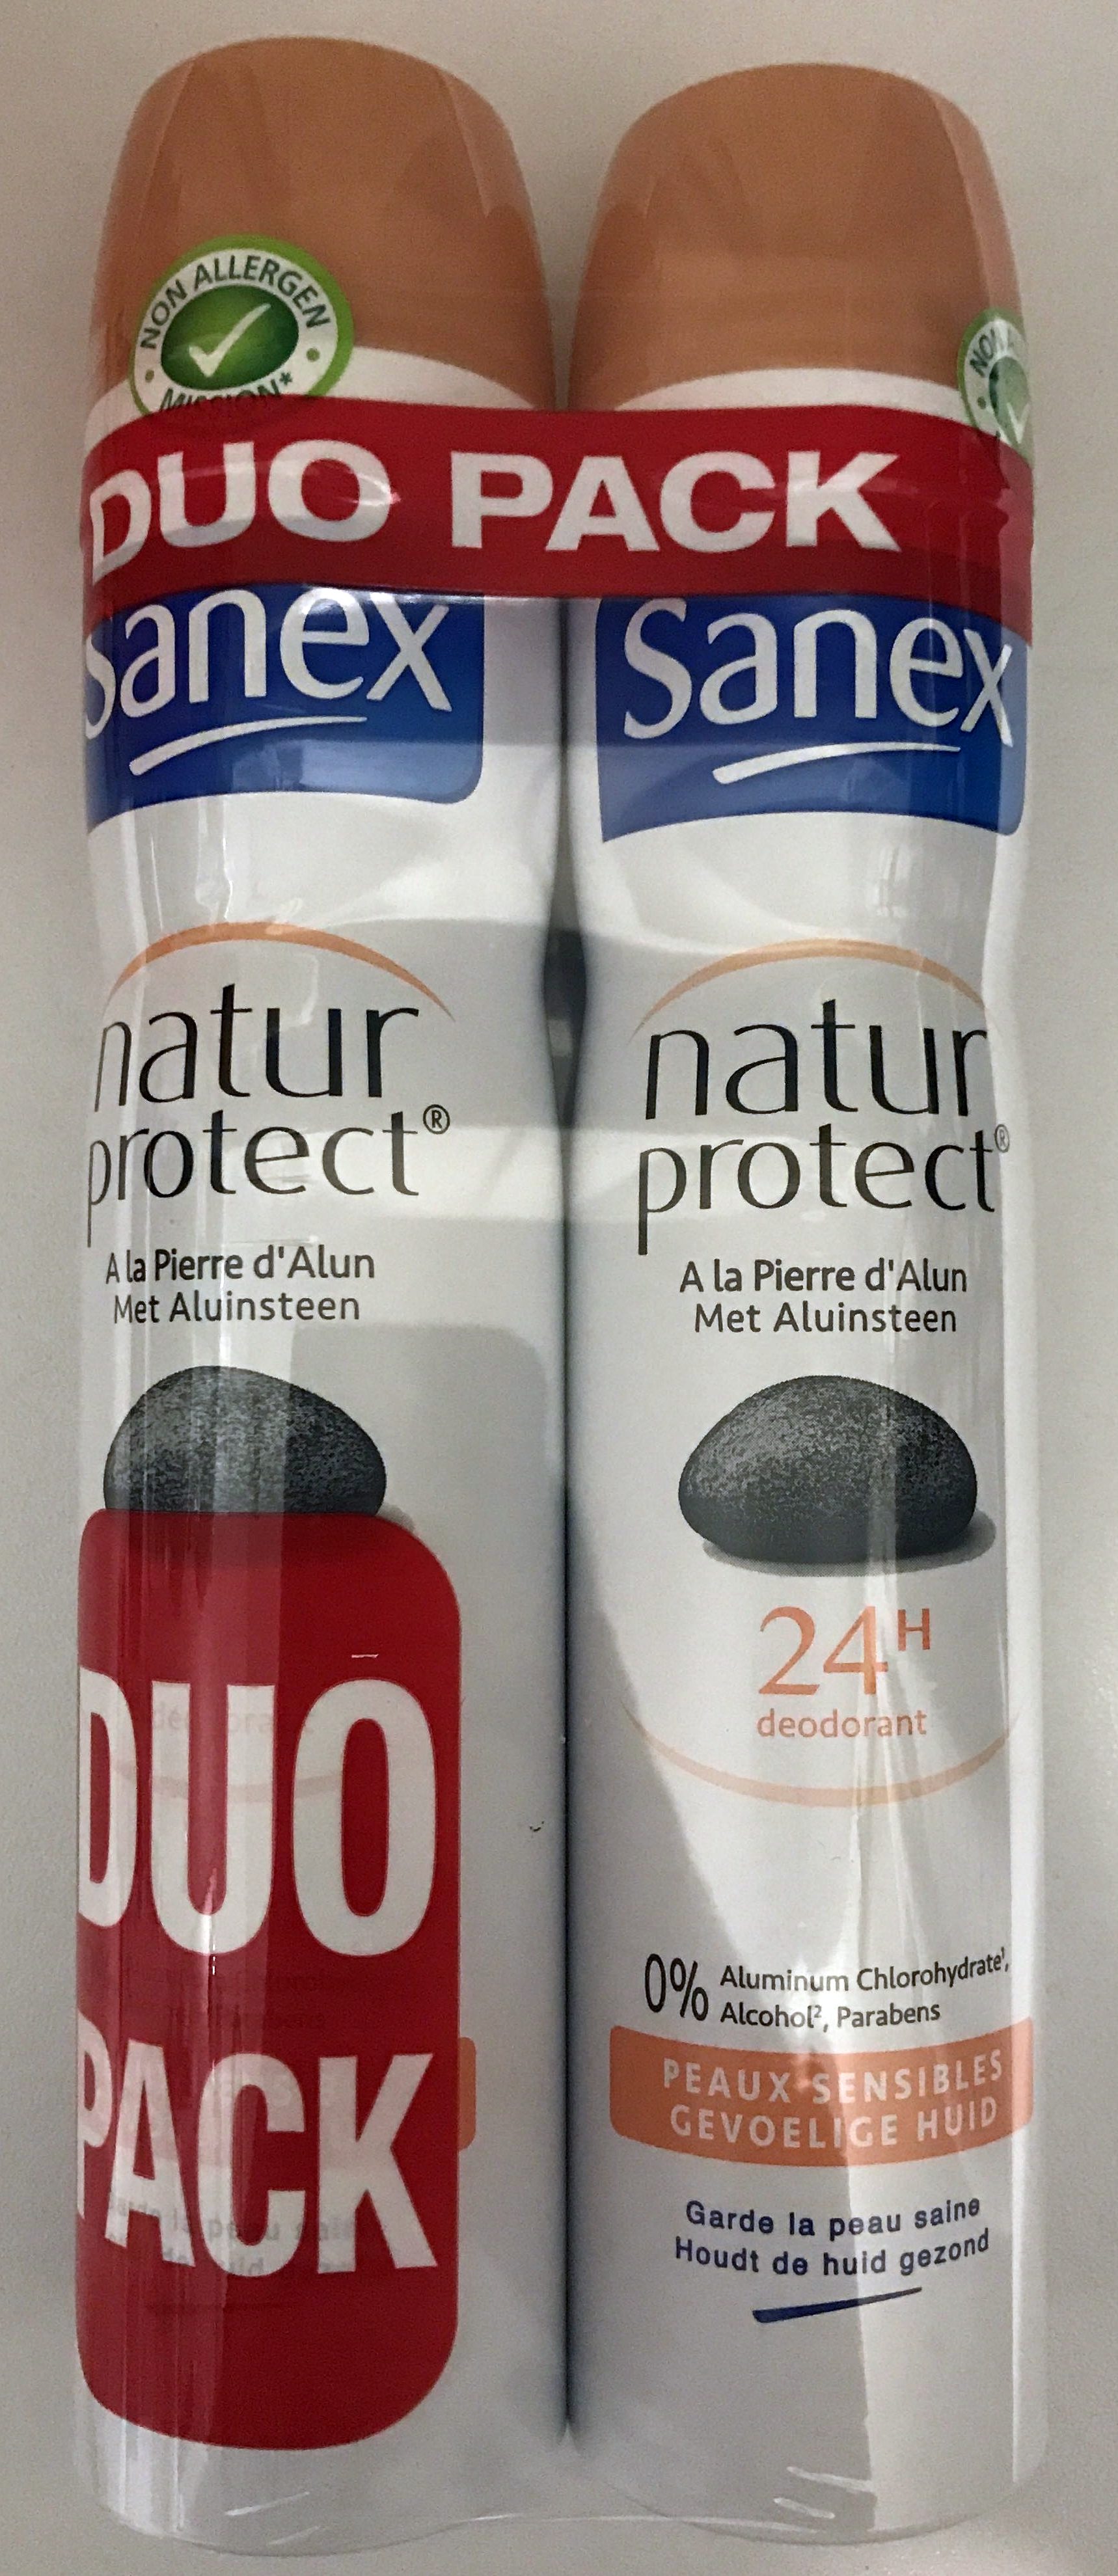 Natur Protect à la pierre d'alun 24h (duo pack) - Product - fr